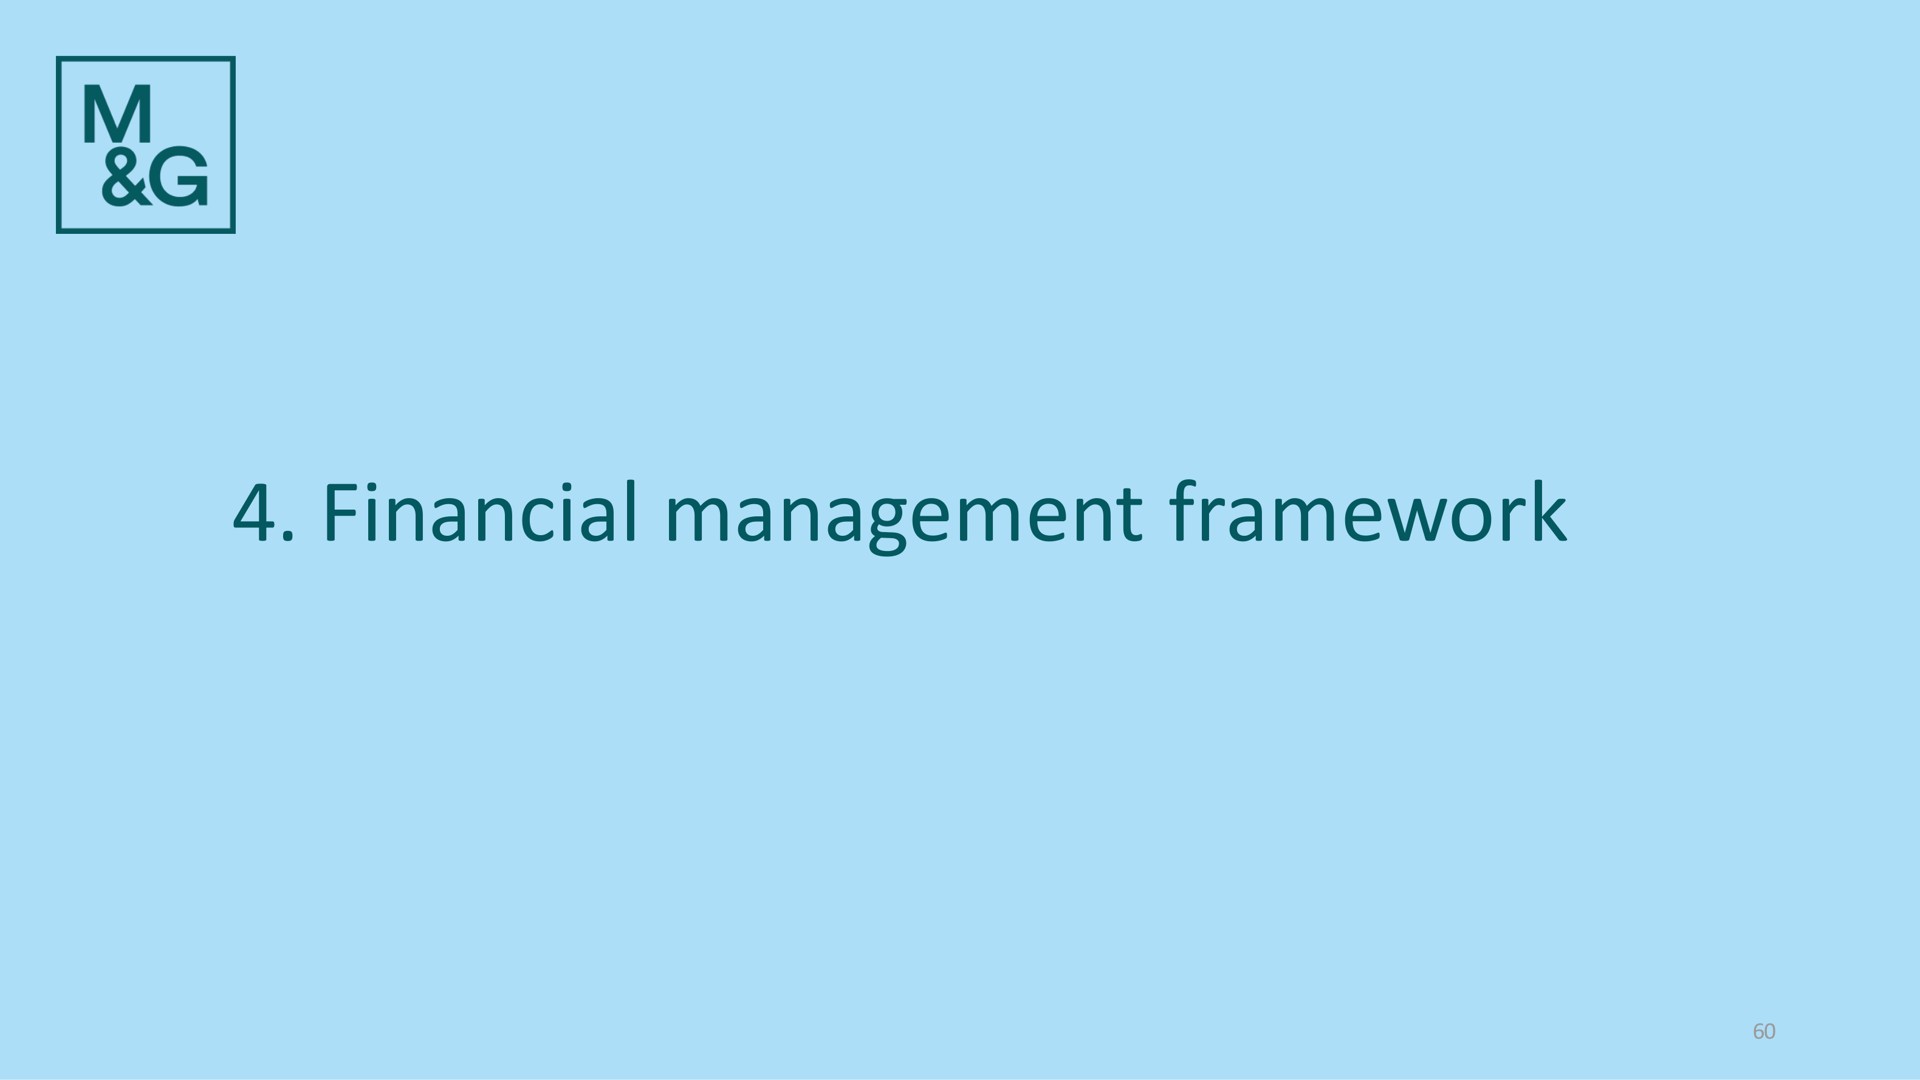 financial management framework | M&G